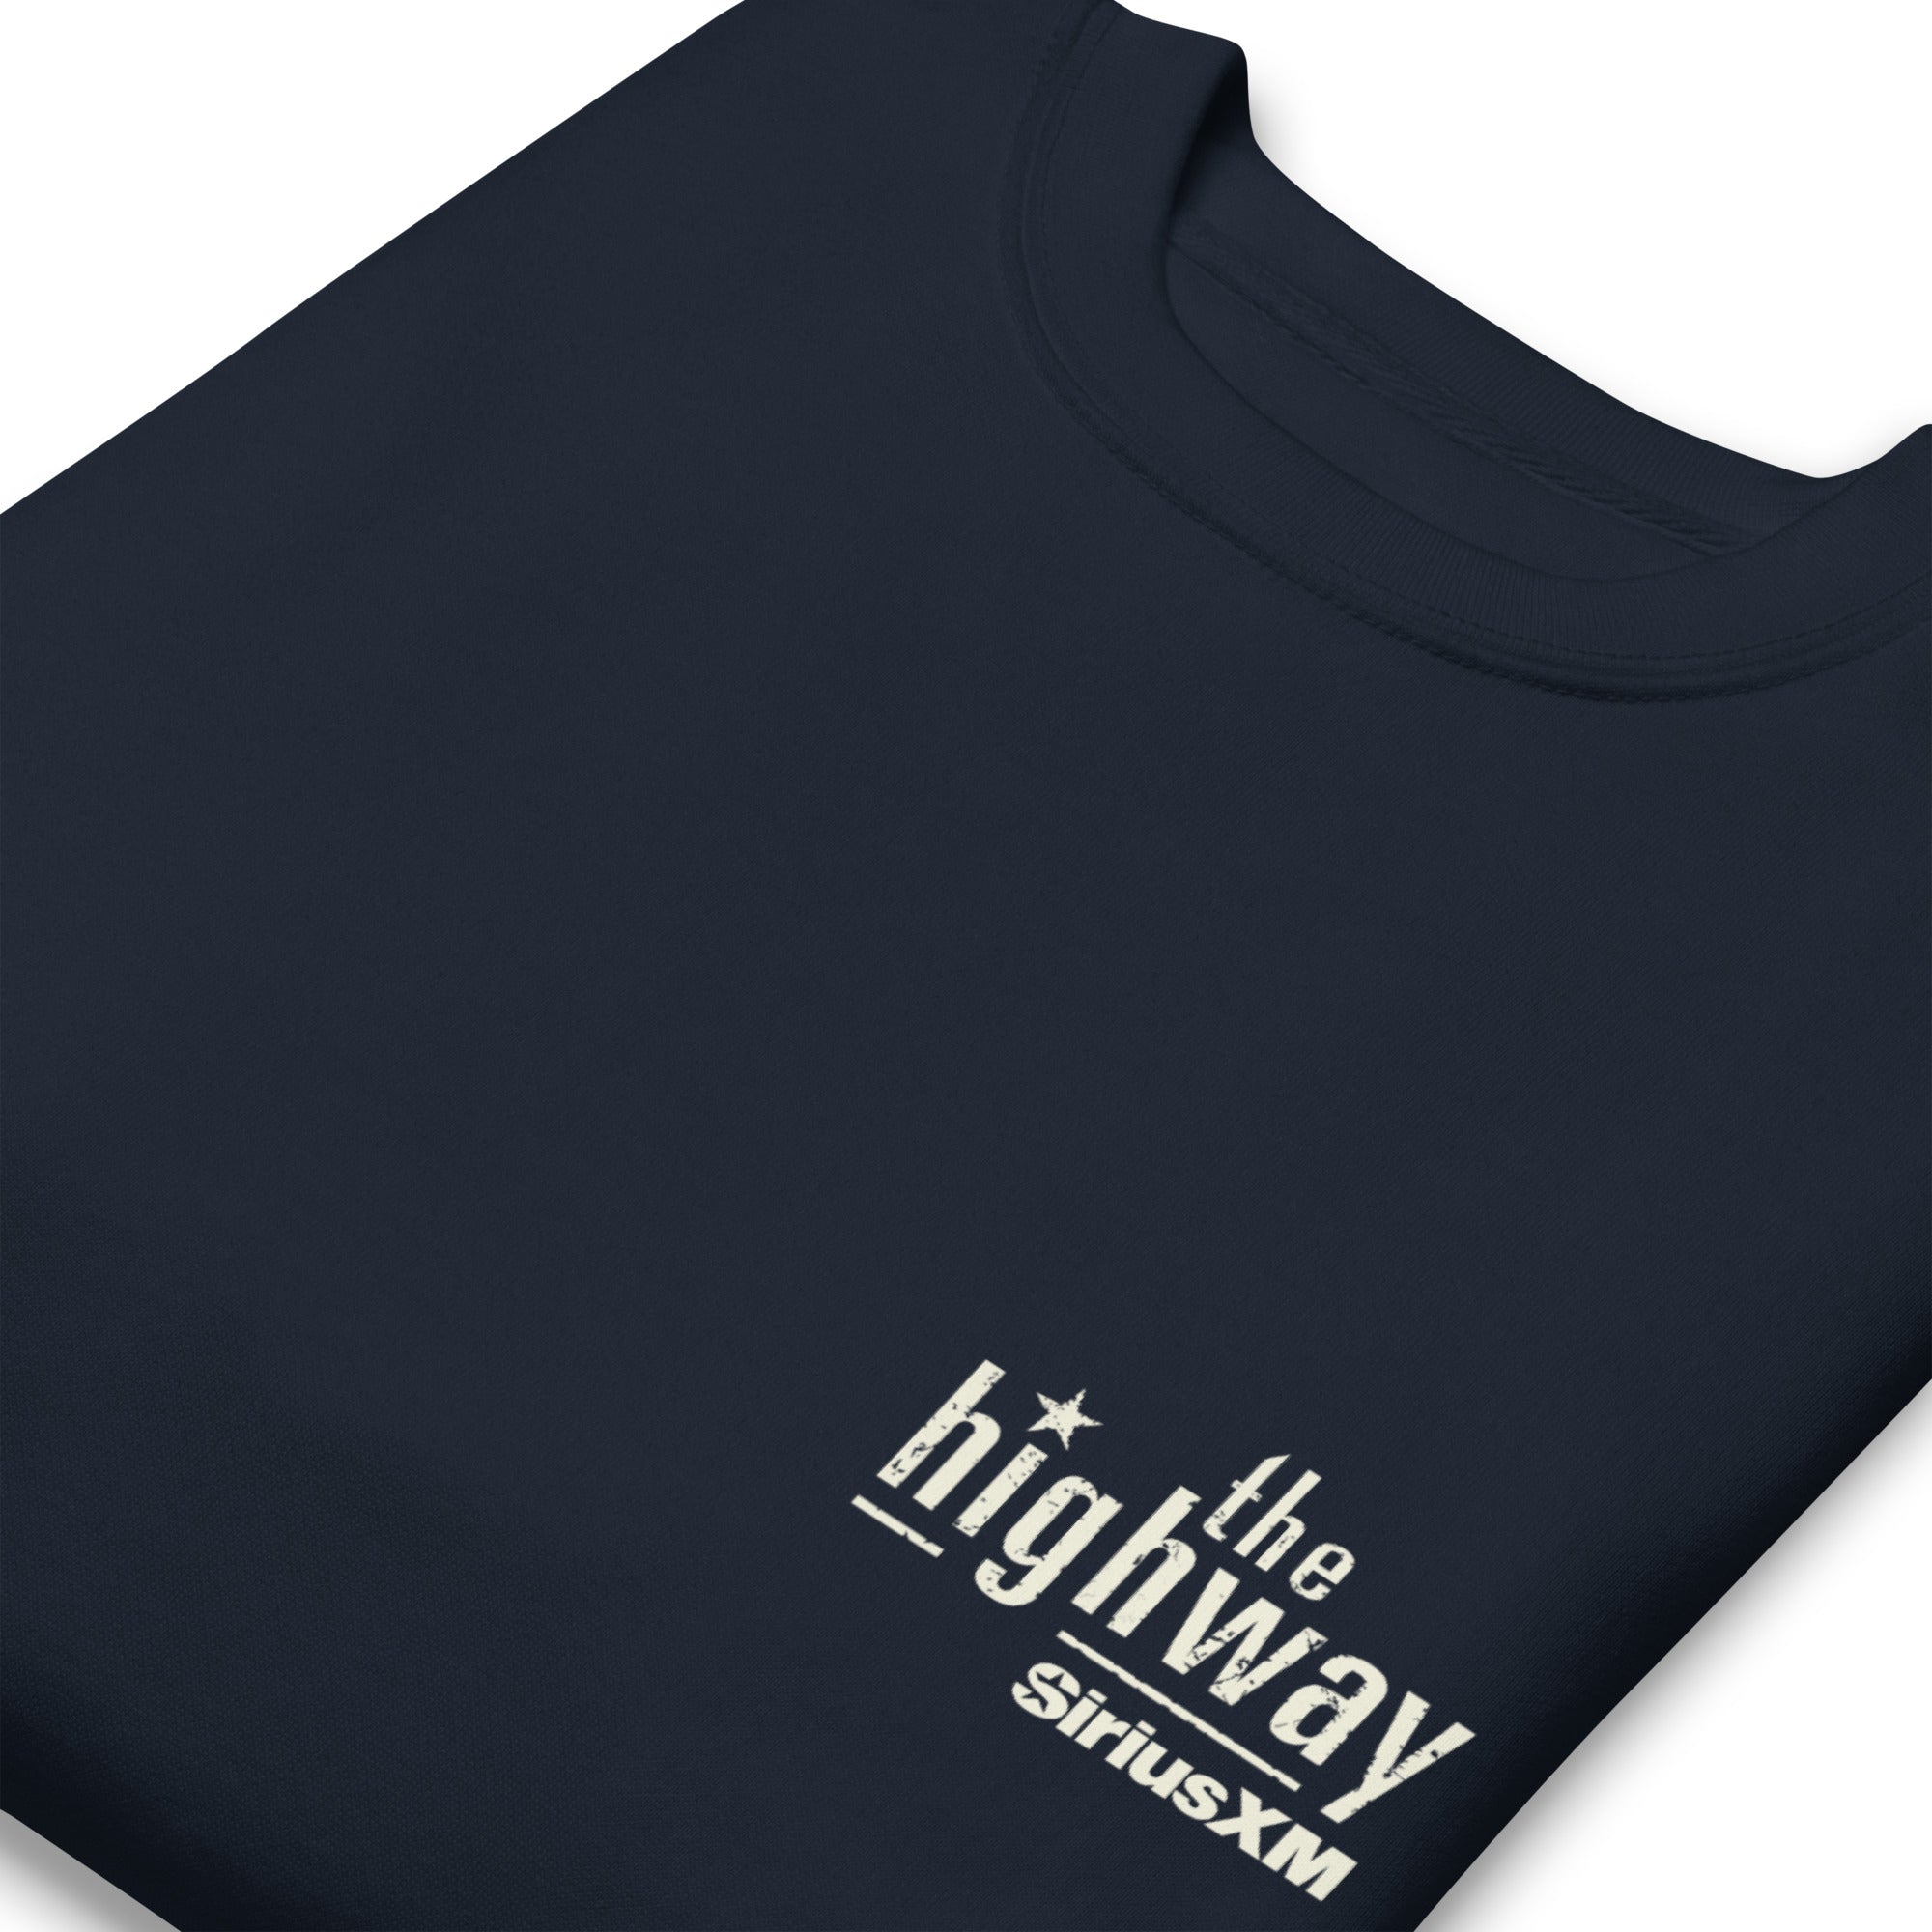 The Highway: Navy Sweatshirt